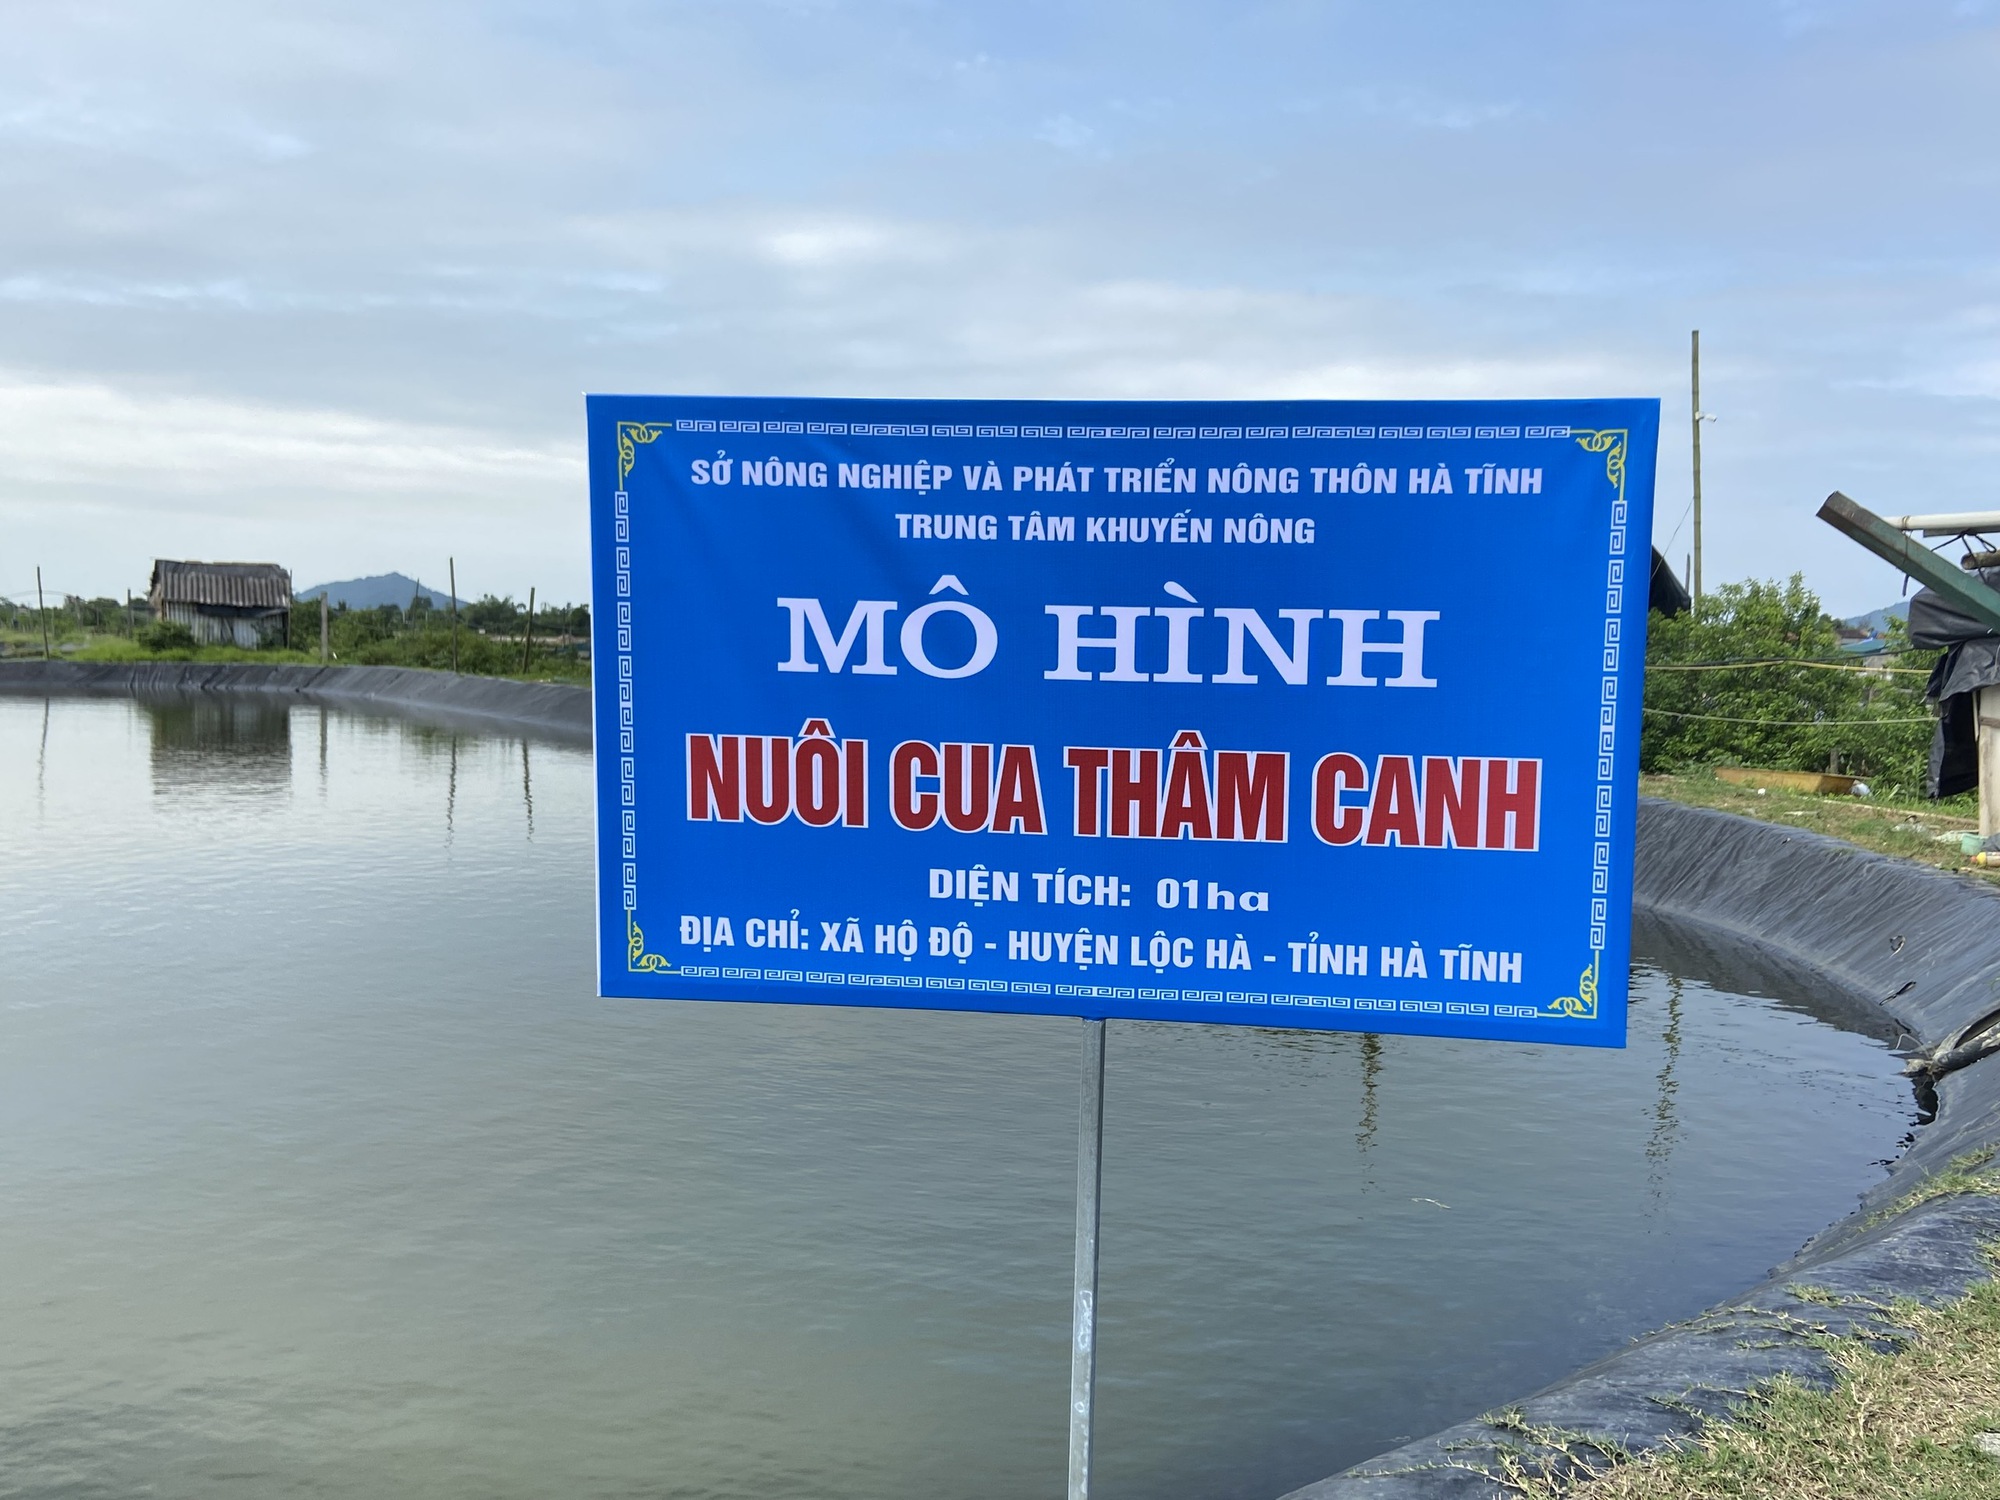 Thả nuôi 10.000 con cua biển, nông dân Hà Tĩnh bắt lên hàng tấn, bán giá 250.000 đồng/kg - Ảnh 1.